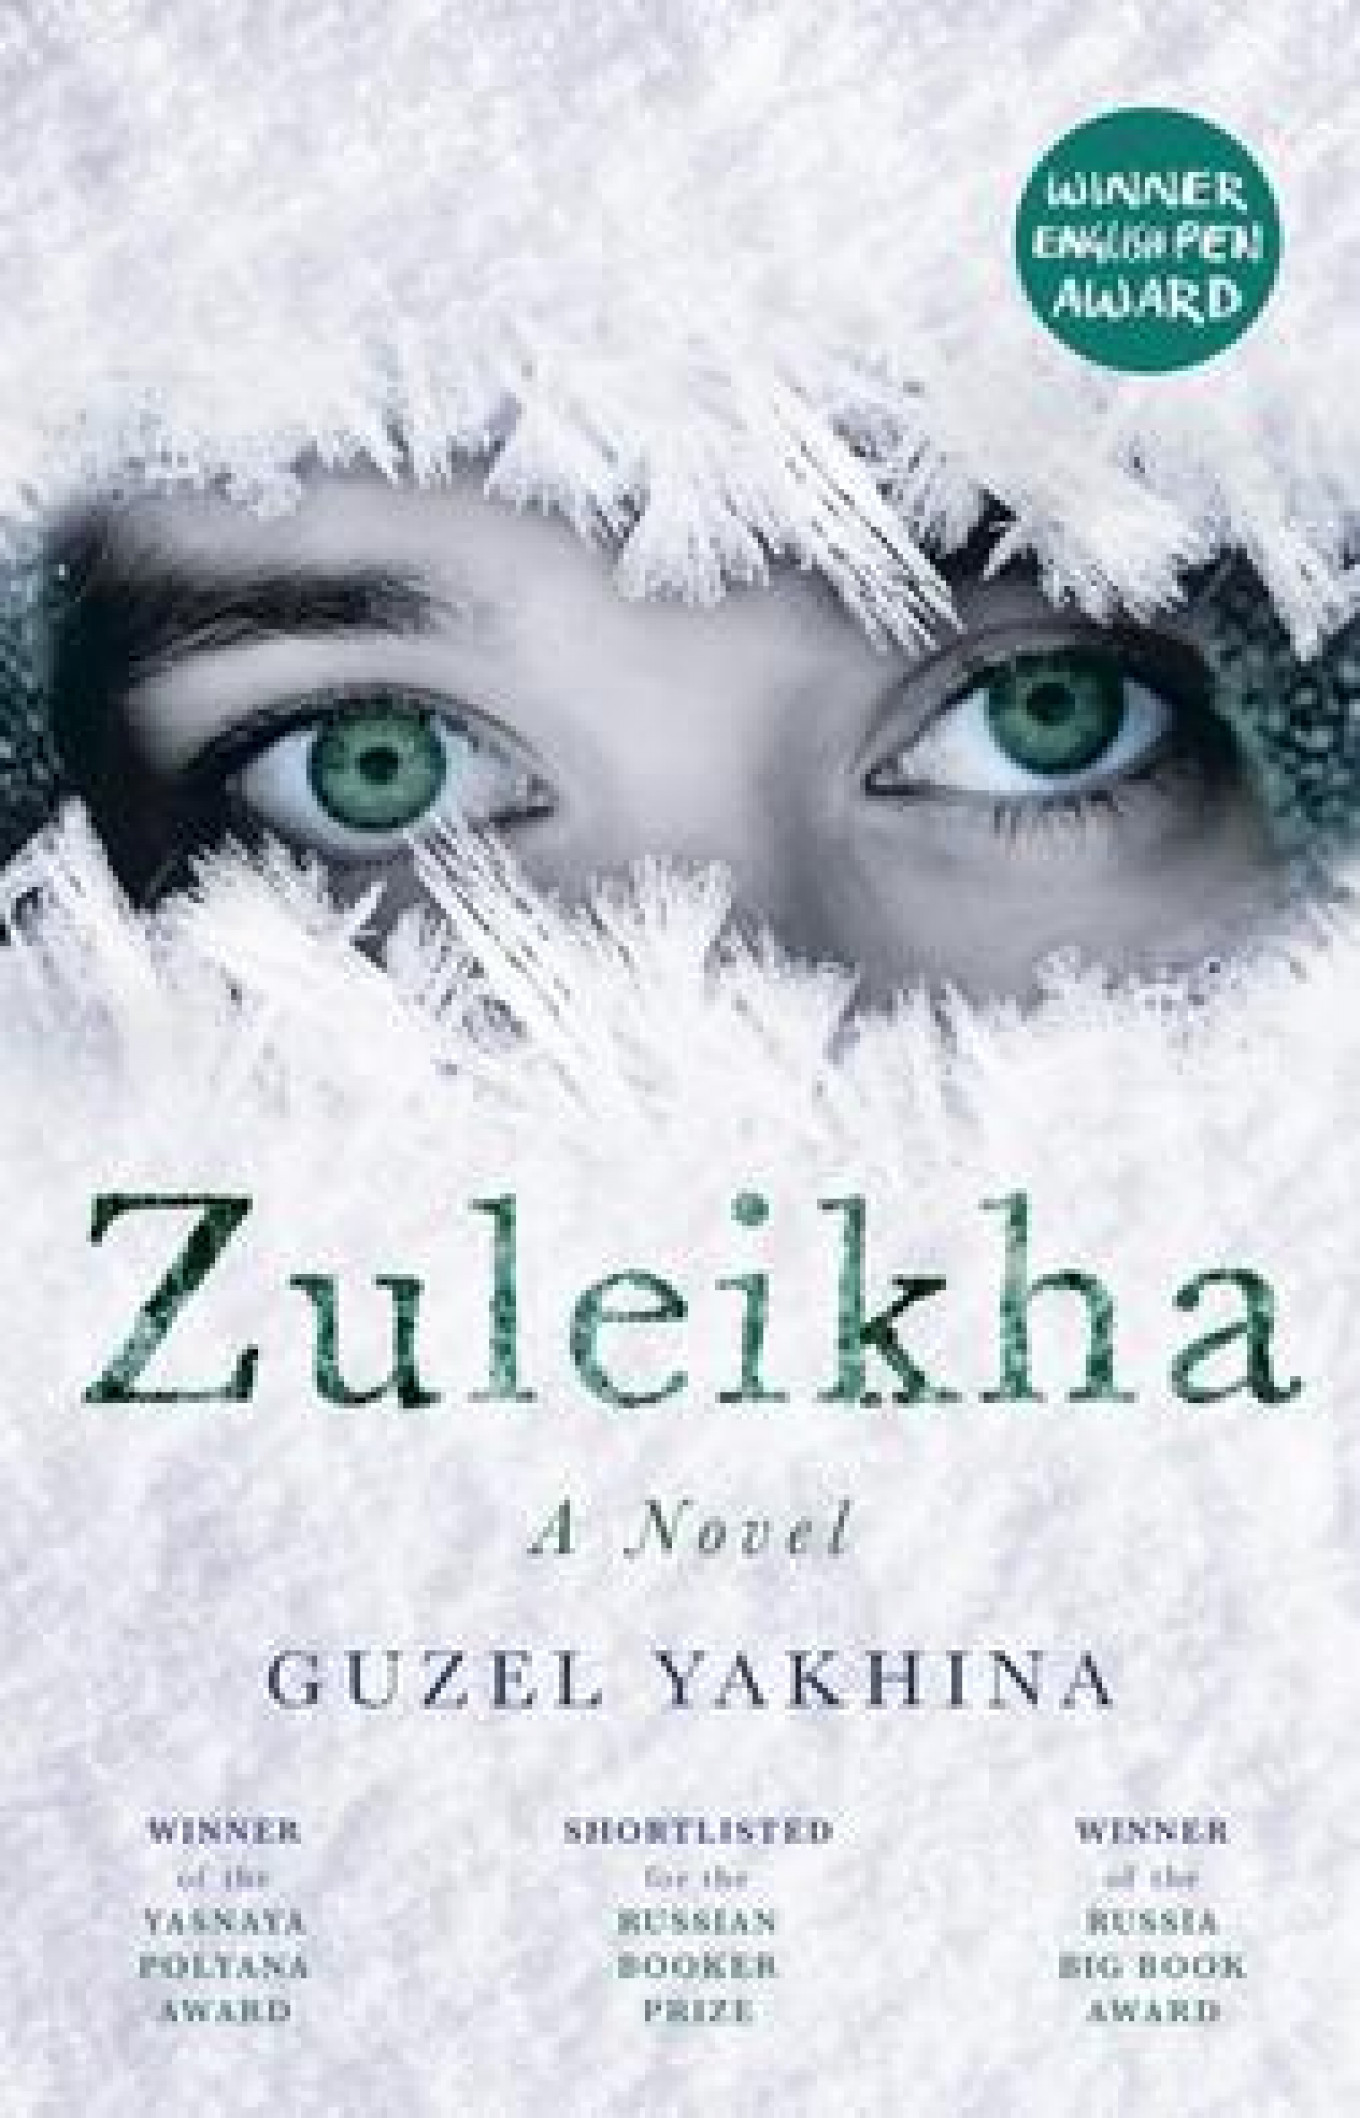  English-language edition of "Zuleikha" Wikimedia Commons 